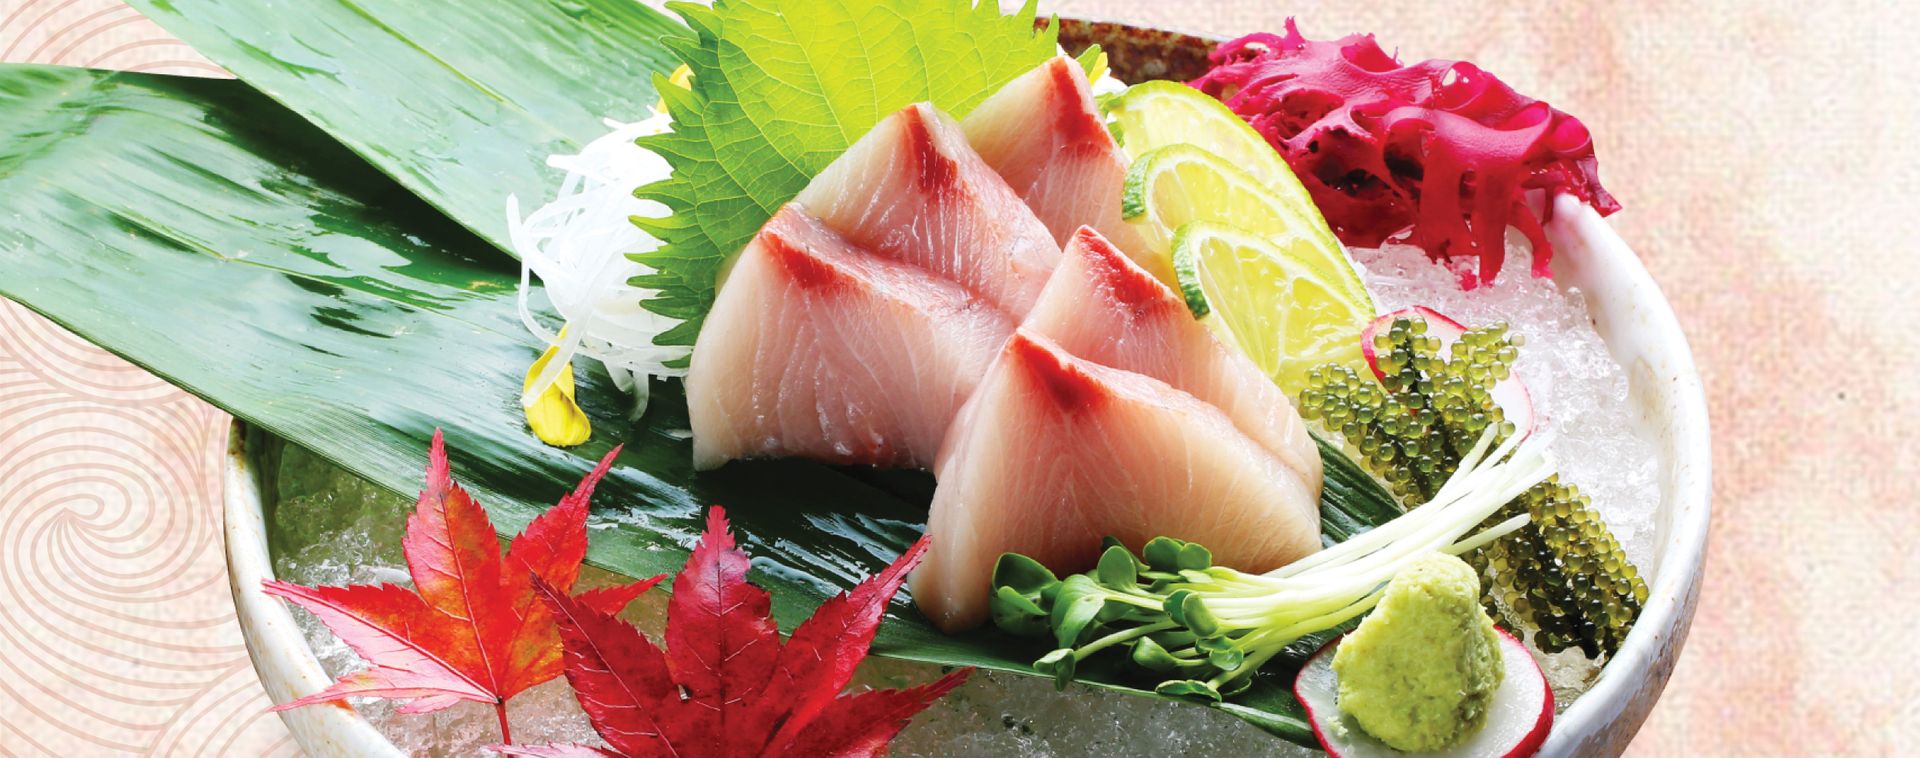 Sushi Hokkaido Sachi điều Gi đa Tạo Nen Sức Hut Với 8000 Du Khach Mỗi Ngay Tại Fukuoka Chợ Ca Lớn Nhất Nhật Bản